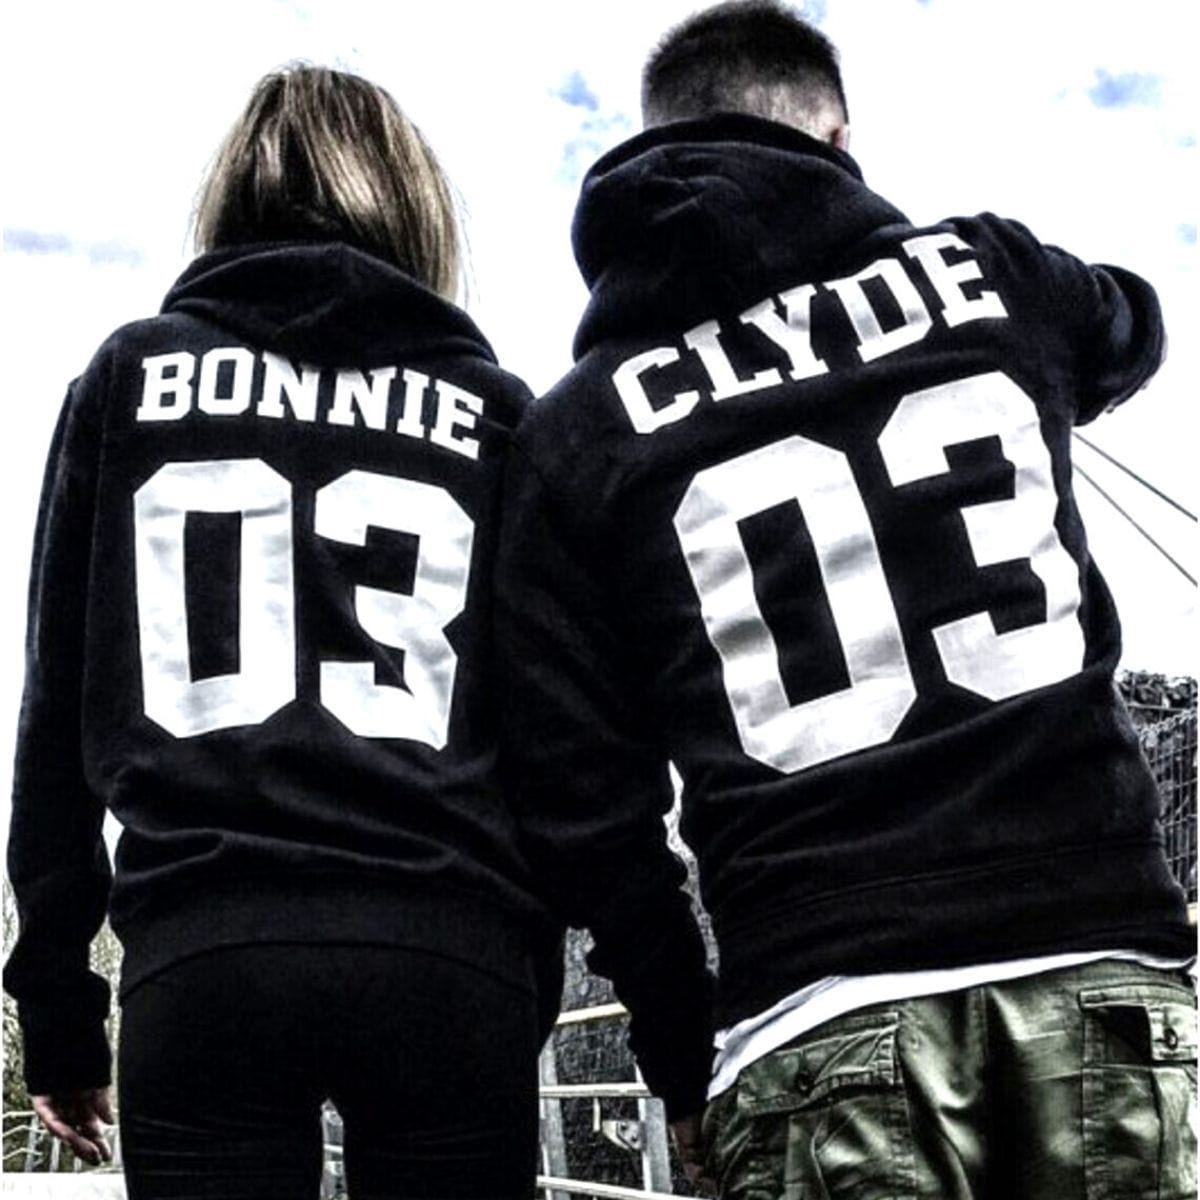 Bonnie & Clyde 03 Hoodies